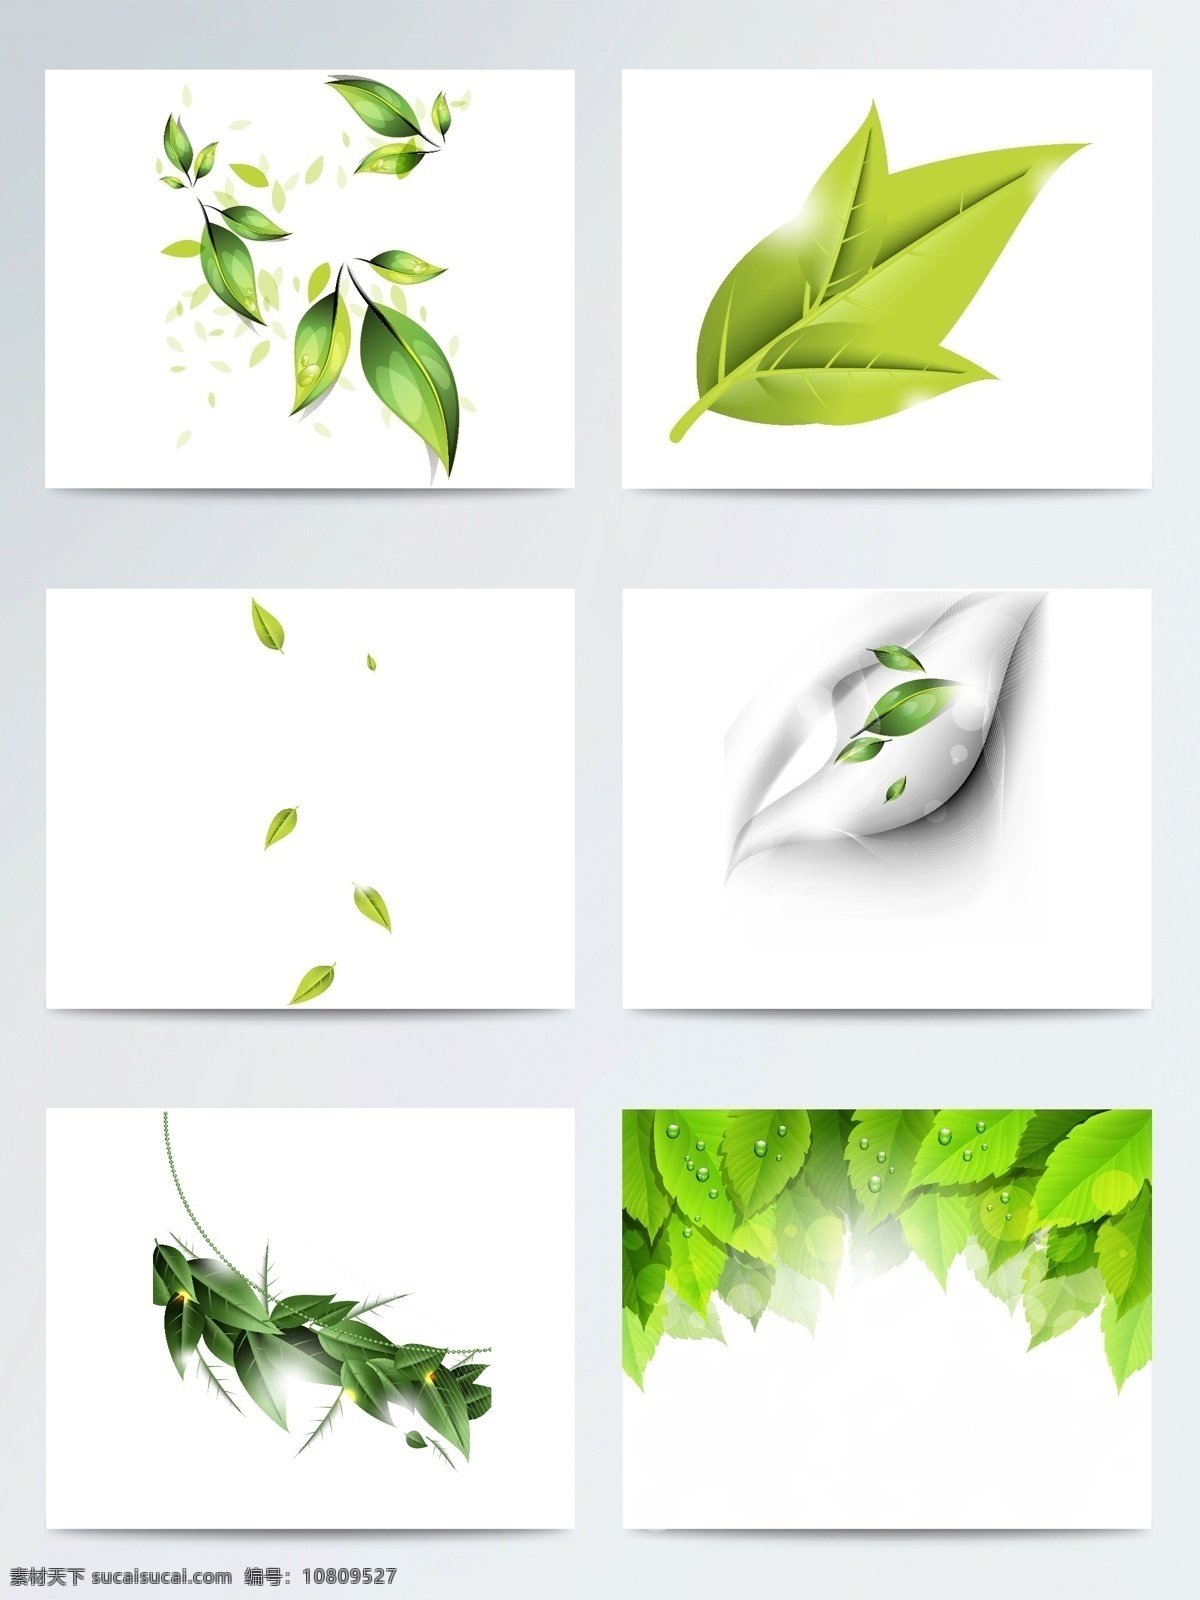 惊蛰 写实 绿叶 矢量 元素 小清新 叶子 简约 创意 草木绿 配图 美观 设计素材